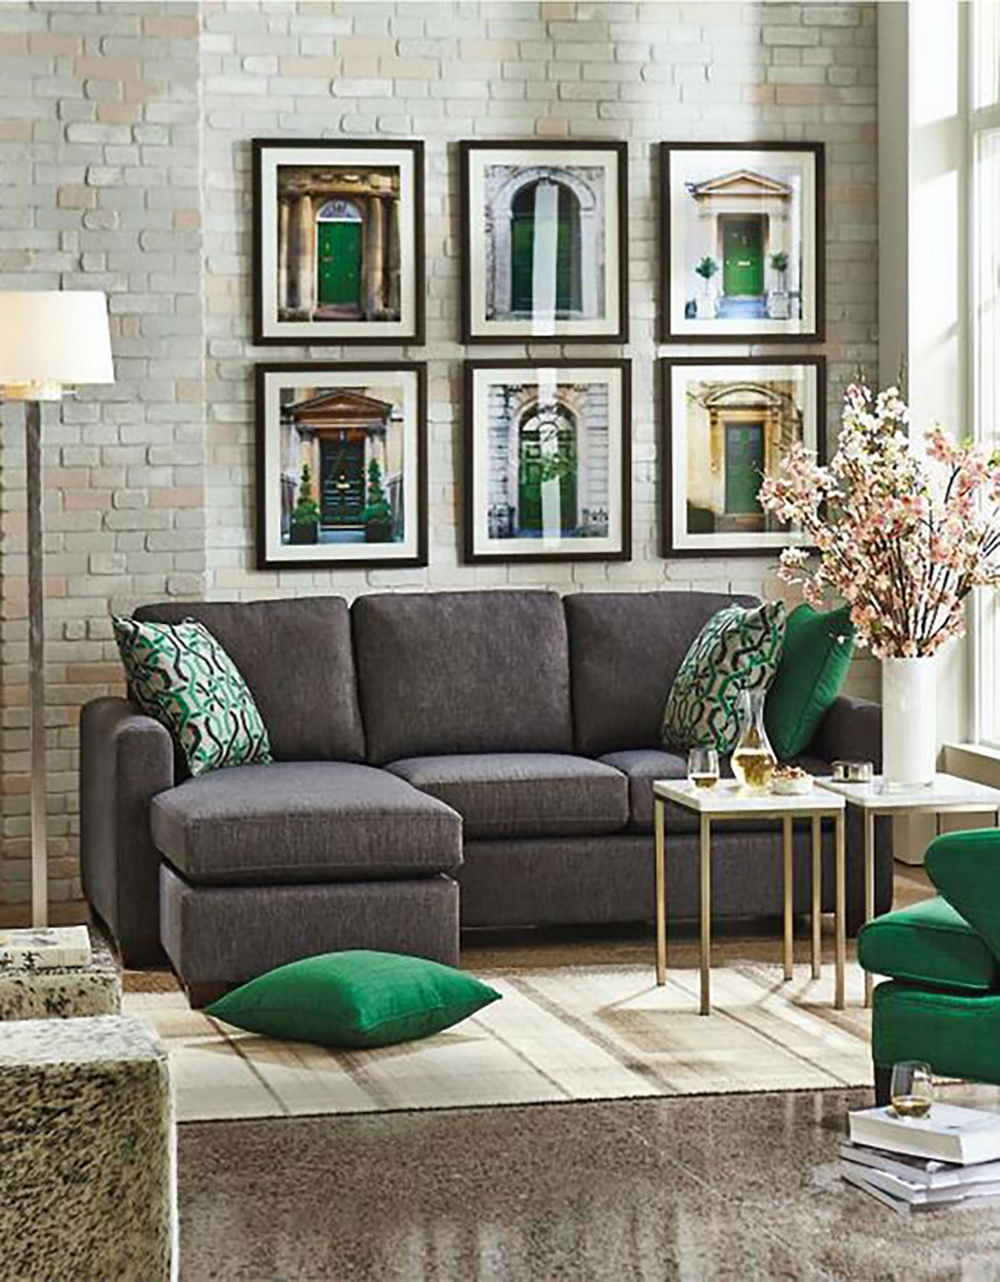 Ghế sofa xám than sang trọng, sàn lát đá màu xám được lau sáng bóng không chút bụi mờ, tường gạch thô mộc kết hợp với các chi tiết màu xanh ngọc lục bảo thời thượng,... tất cả tạo nên một vẻ đẹp tinh tế cho phòng khách nhỏ.